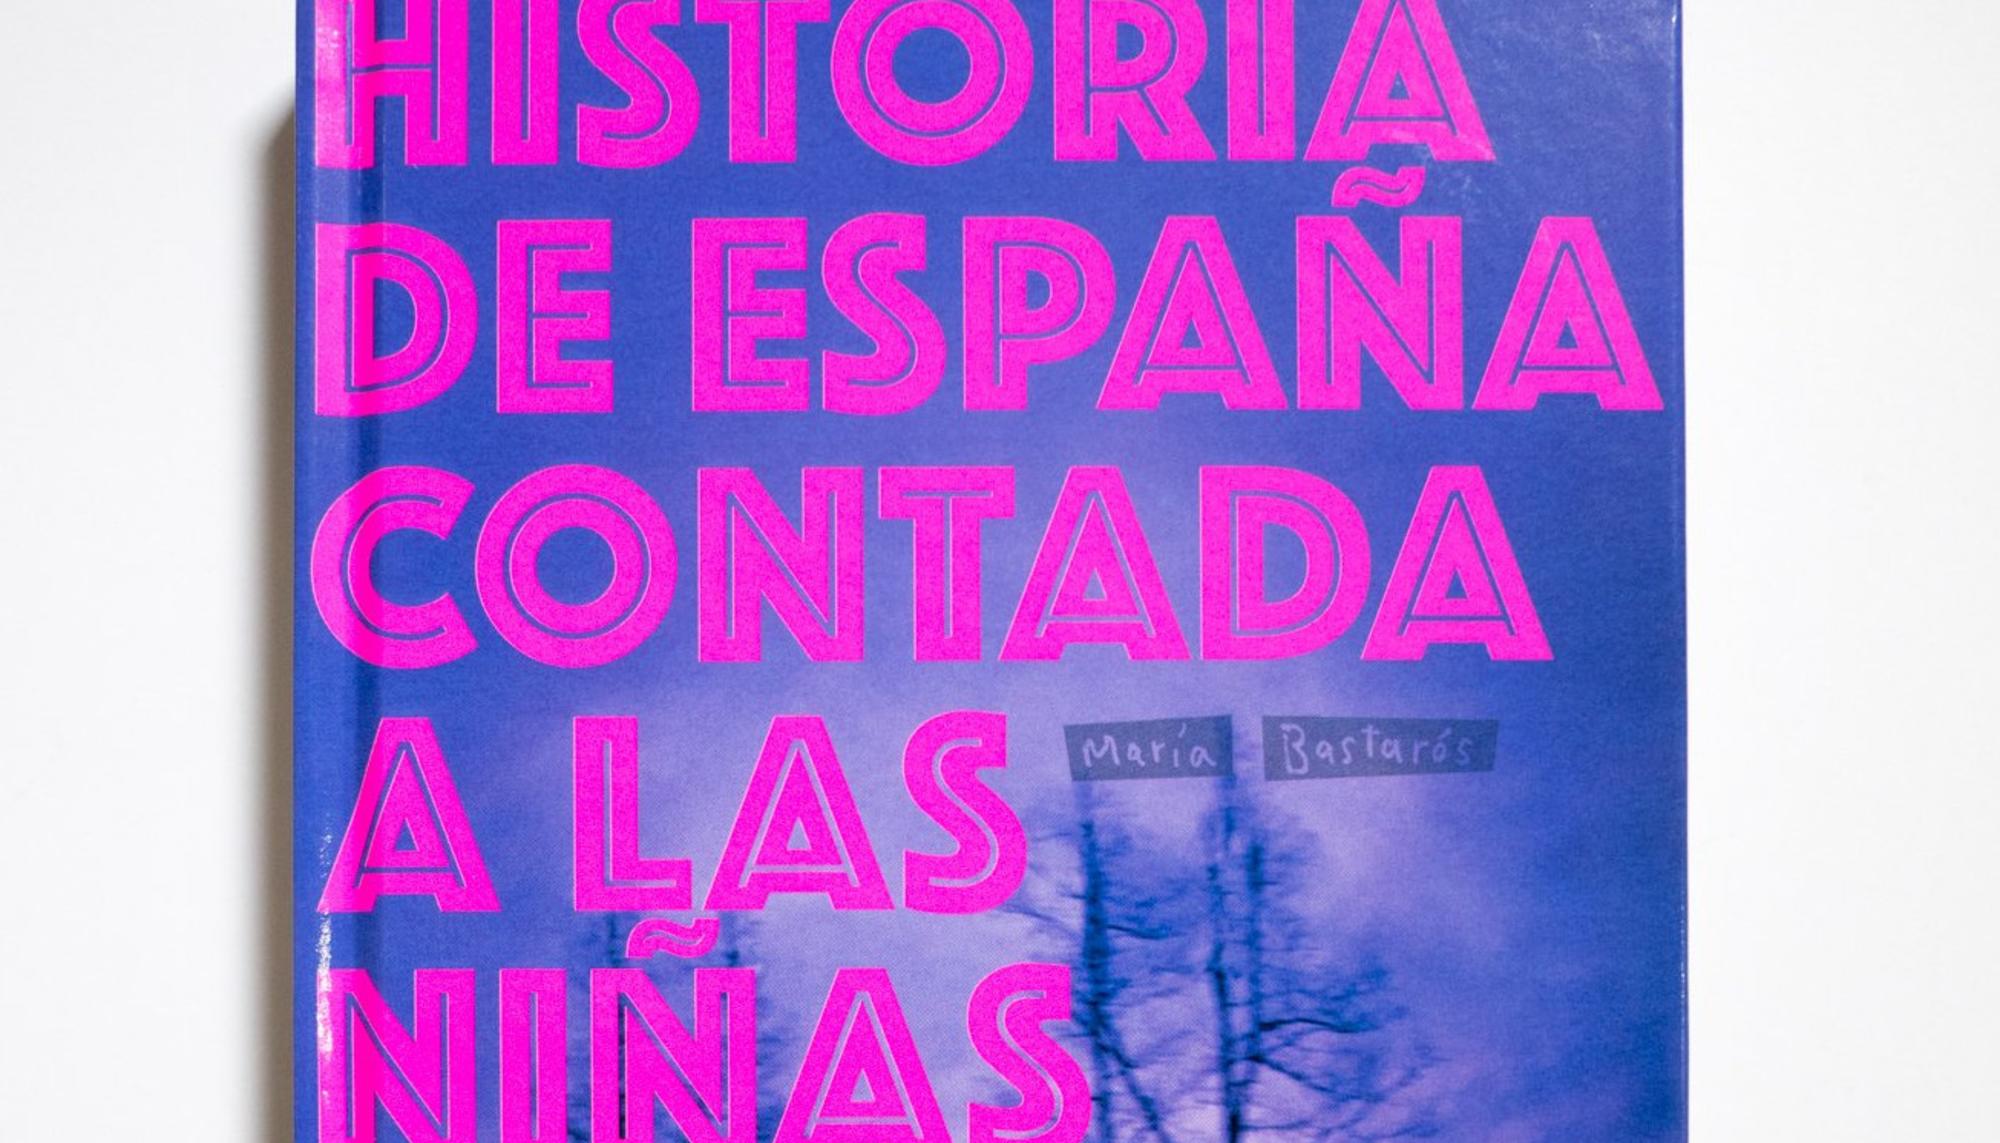 Historia de España contada a las niñas de María Bastarós